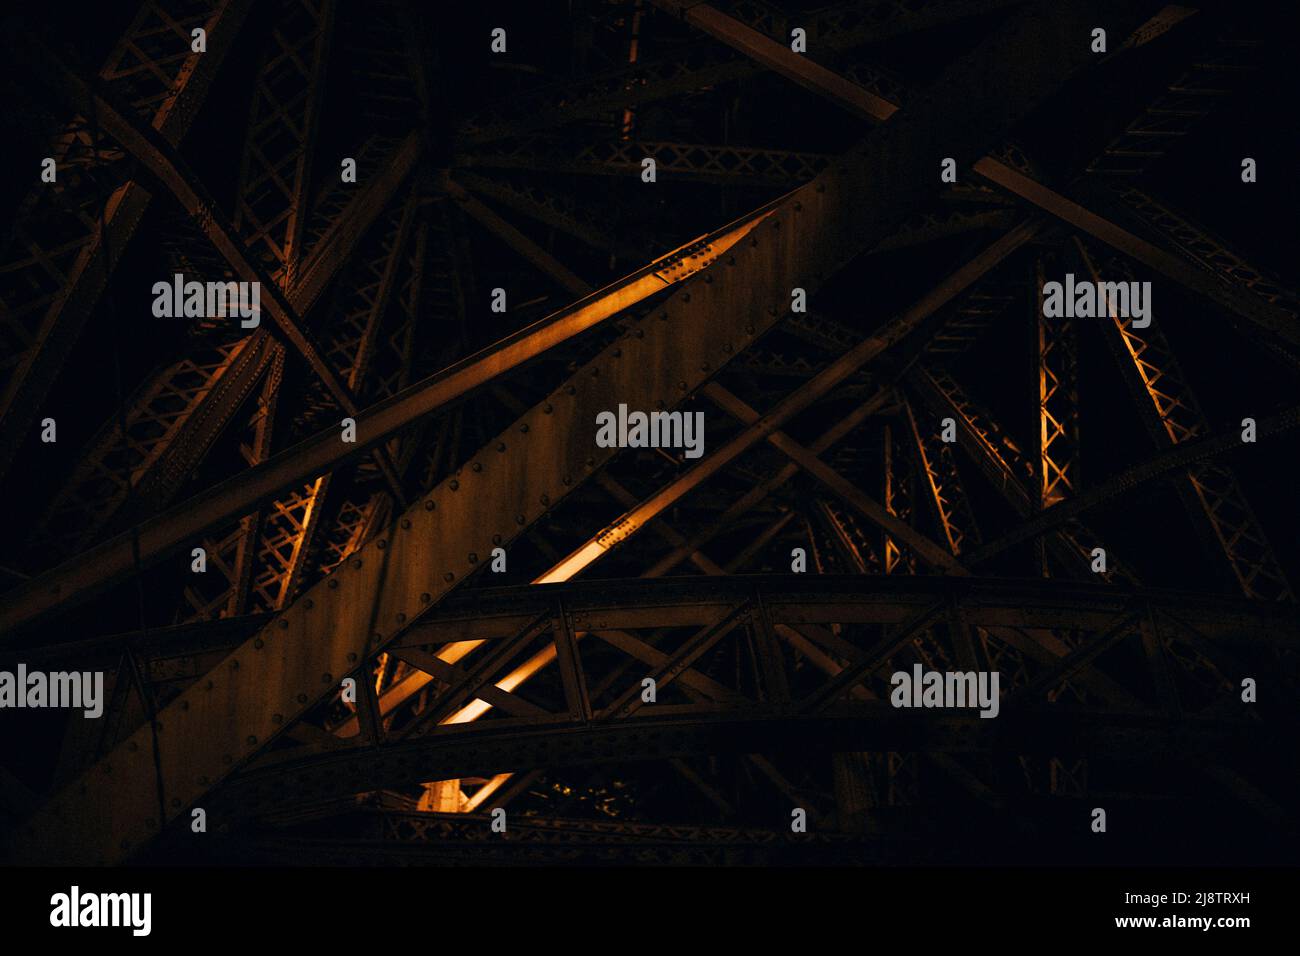 Porto, Portogallo, 10.04.22: Die Unterkonstruktion mit den Stahlträgern der Brücke Dom Luis im Lampenlicht. Foto: Presepfoto Mika Volkmann Foto Stock